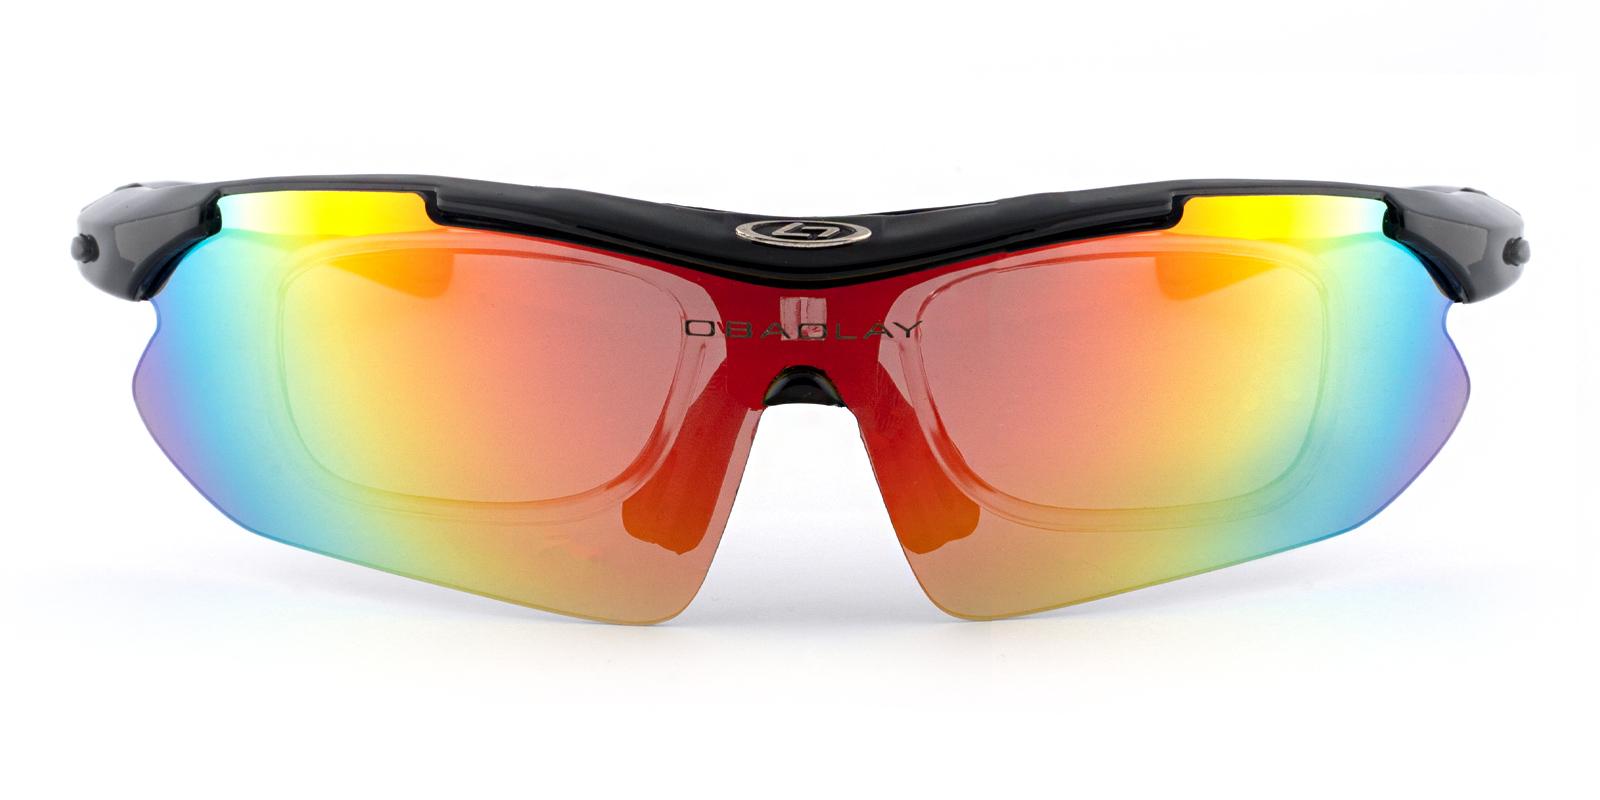 Christiansburg Black Plastic Eyeglasses , SportsGlasses Frames from ABBE Glasses